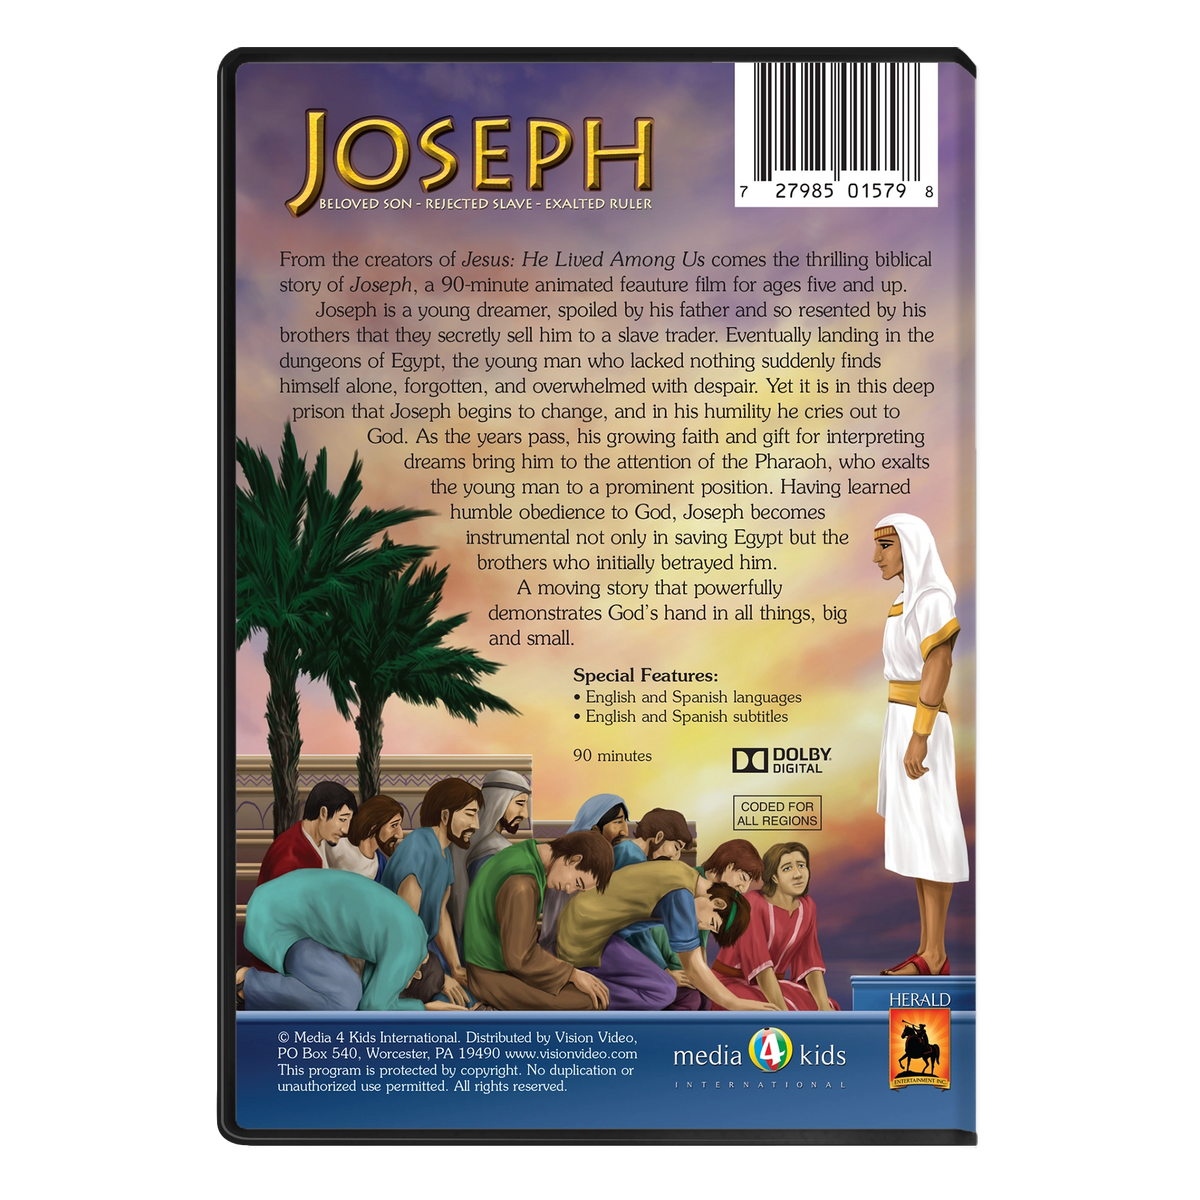 Joseph: Beloved Son - Rejected Slave - Exalted Ruler